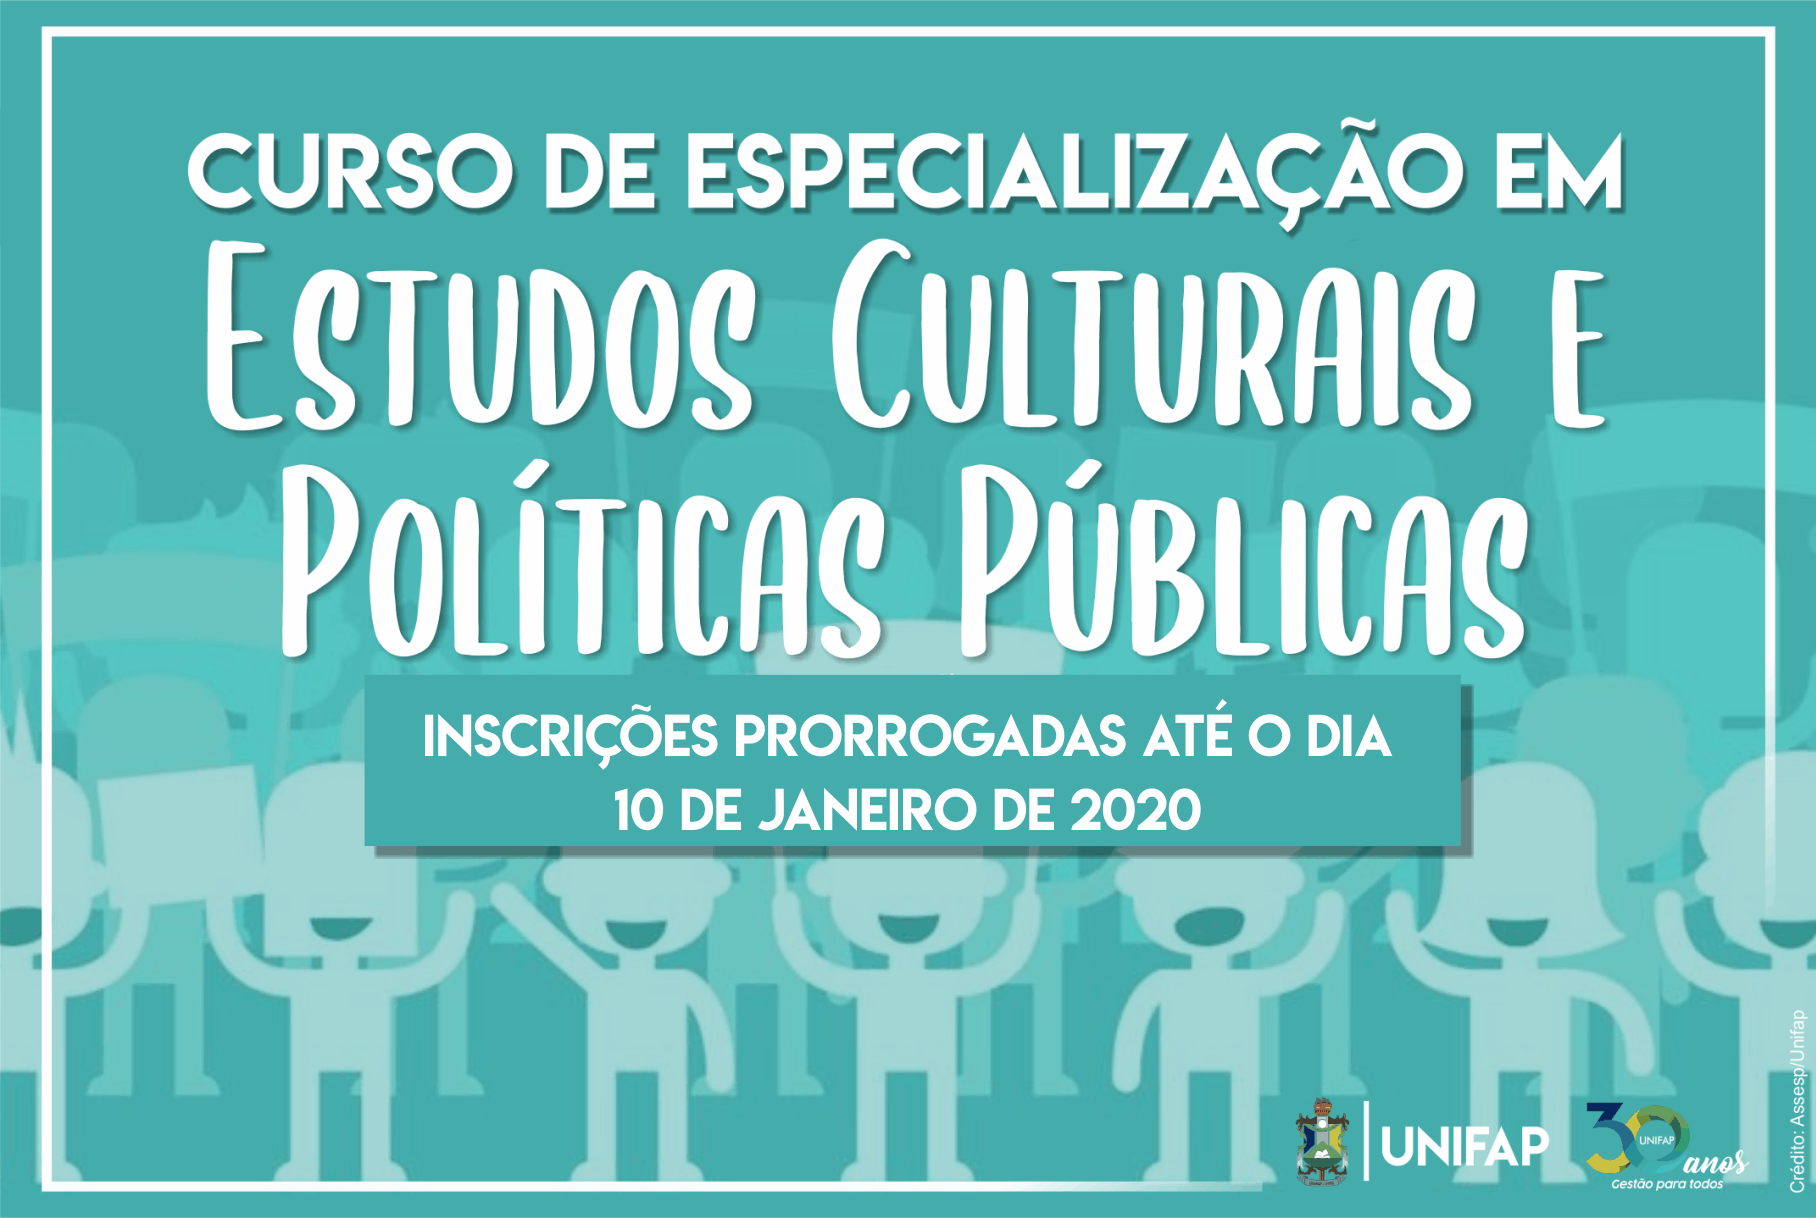 Curso de Especialização em Estudos Culturais e Políticas Públicas encerra inscrições dia 10 de janeiro.